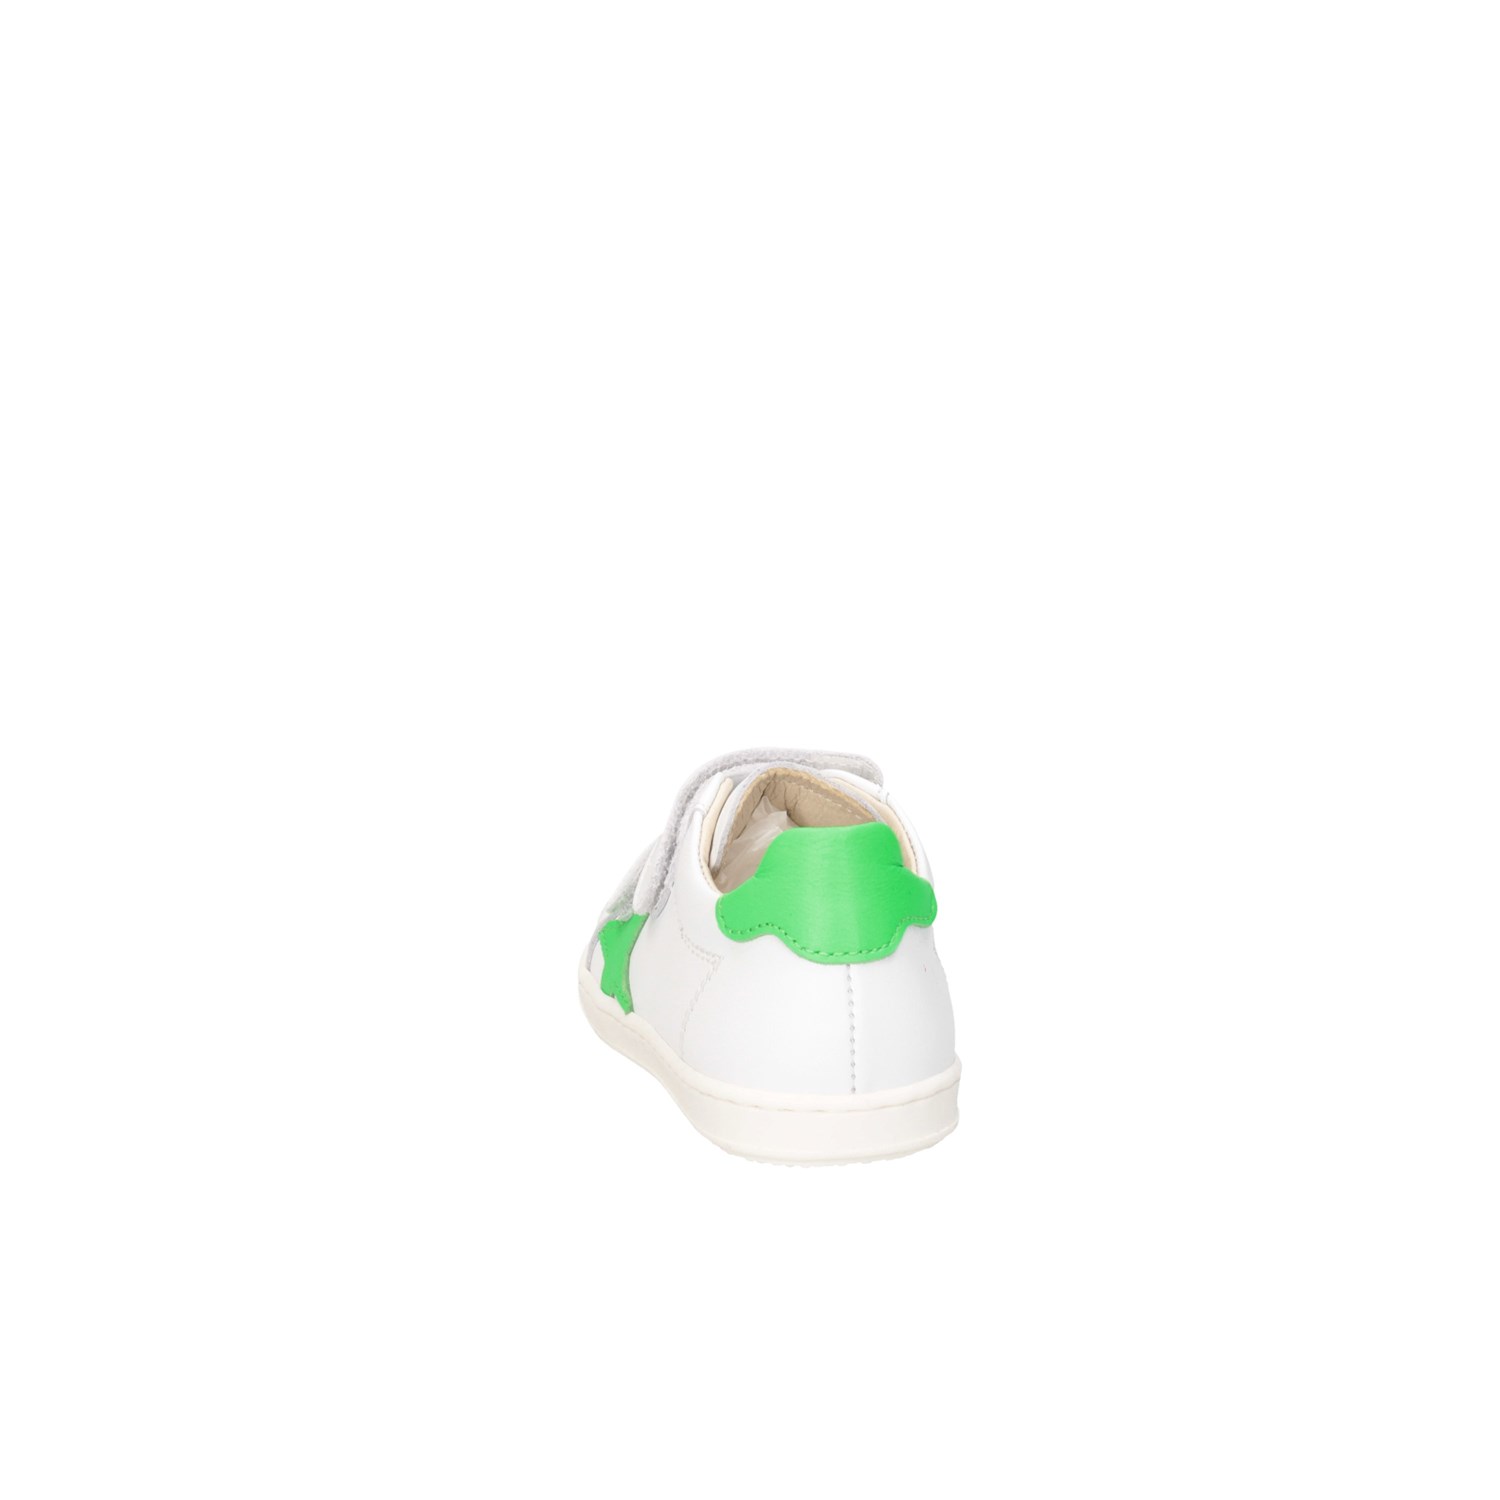 Gioiecologiche 5561 White green Shoes Child 